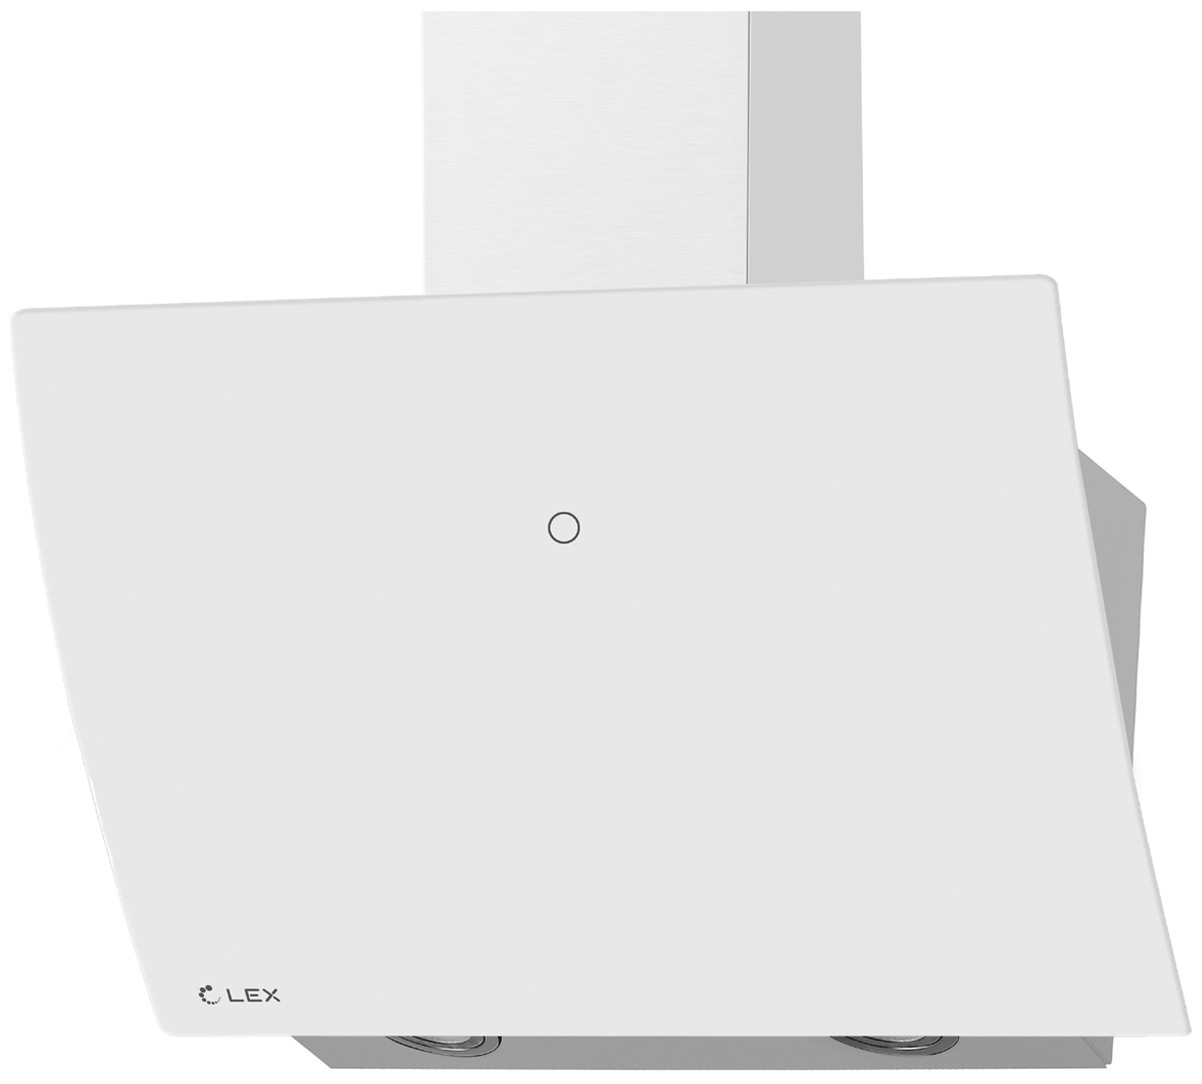 Вытяжка LEX PLAZA GS 600 WHITE вытяжка кухонная наклонная lex plaza gs 600 white